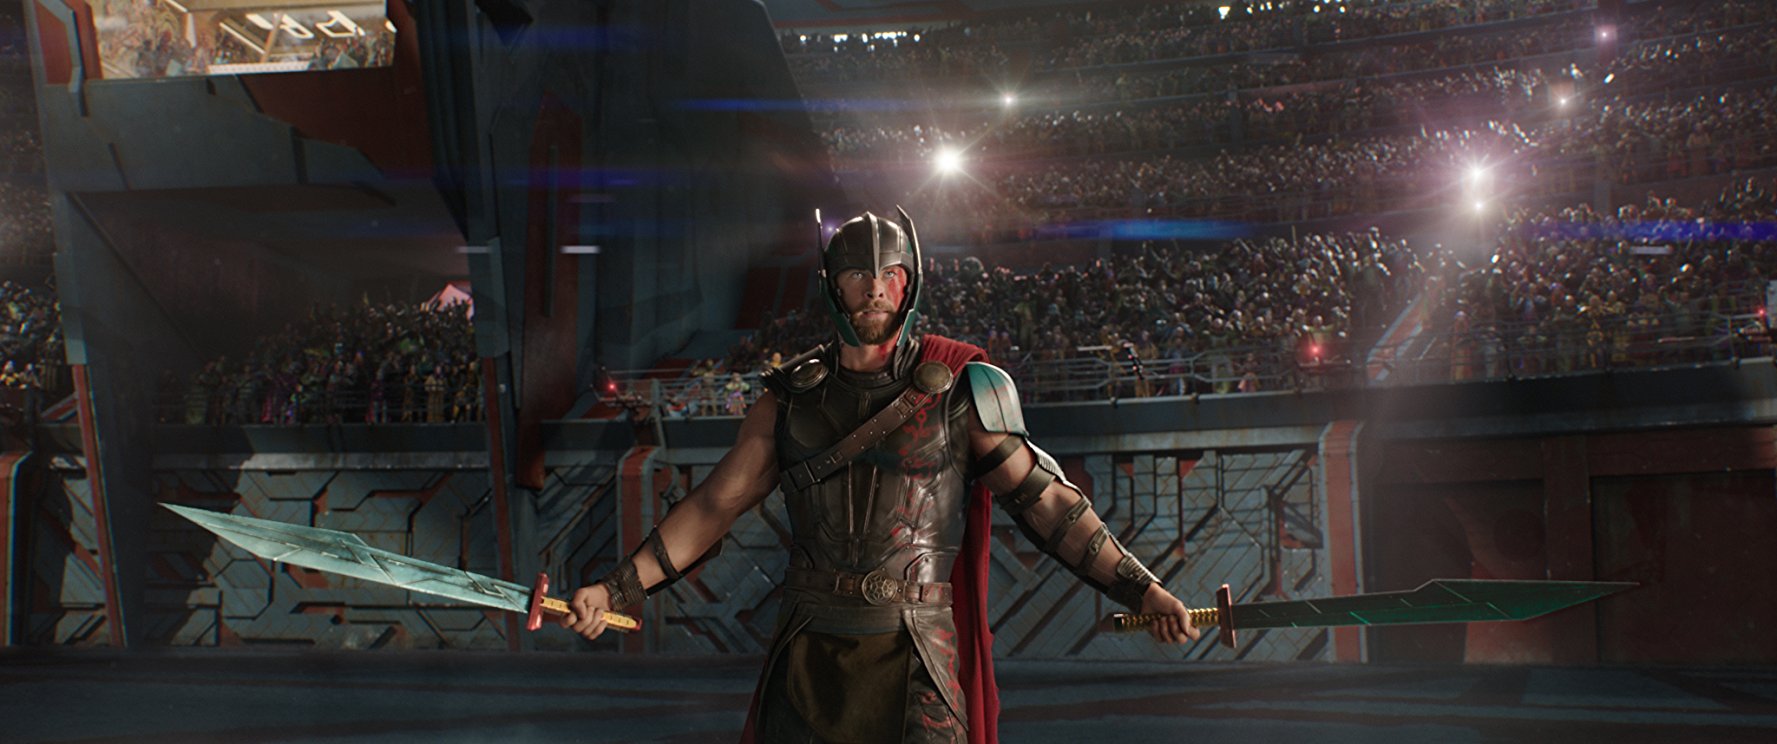 Thor: Ragnarok op DVD en Blu-Ray winactie Arena